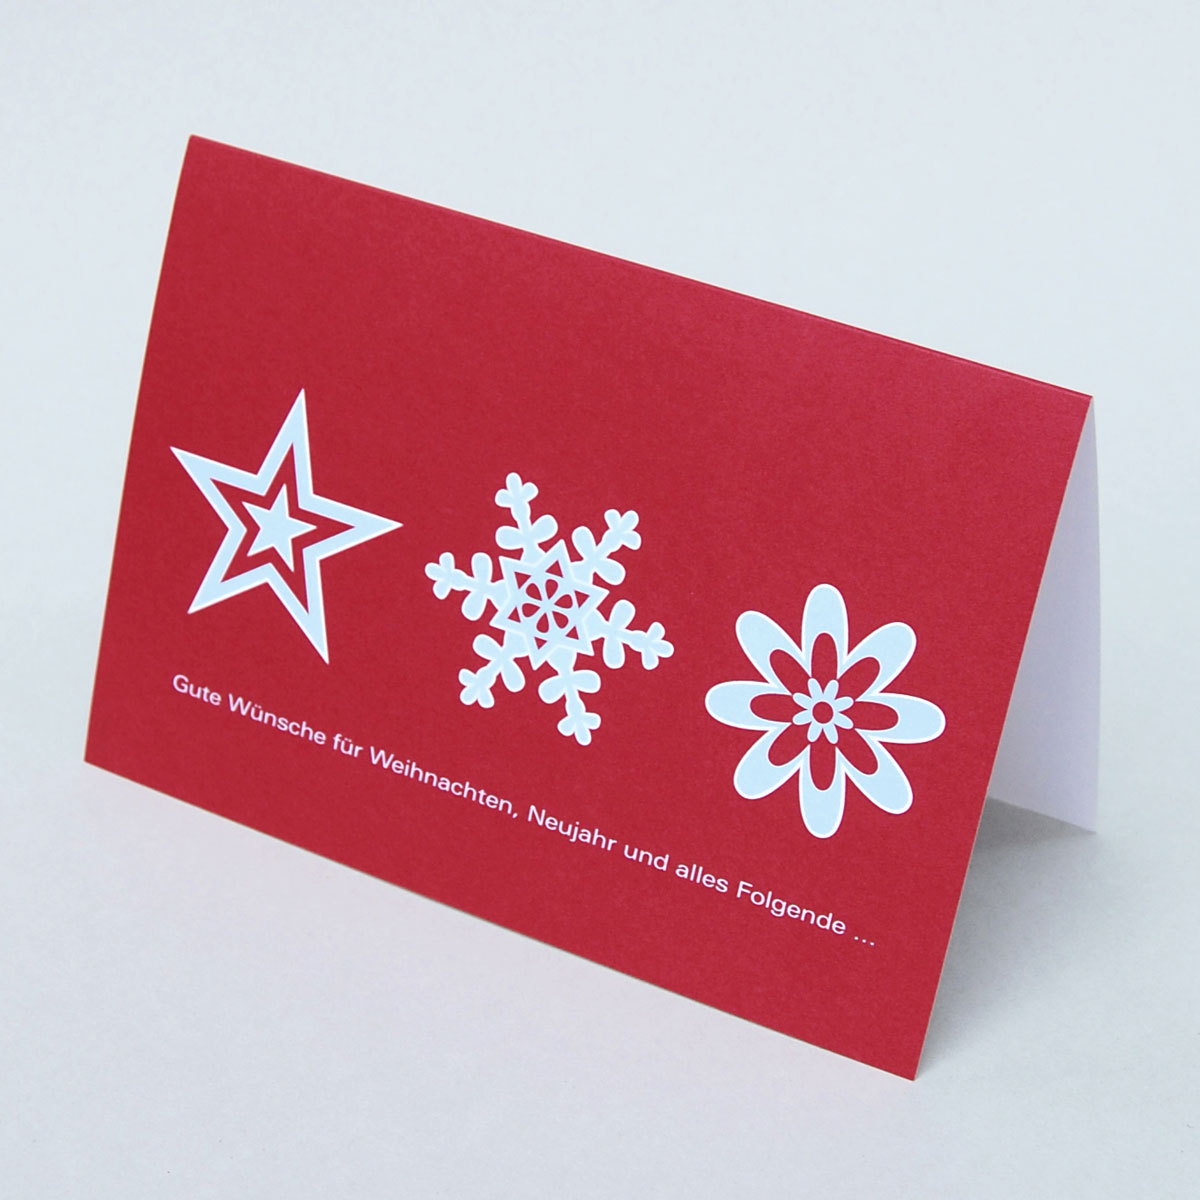 Gute Wünsche für Weihnachten, Neujahr und alles Folgende... rote Weihnachts- und Neujahrskarten